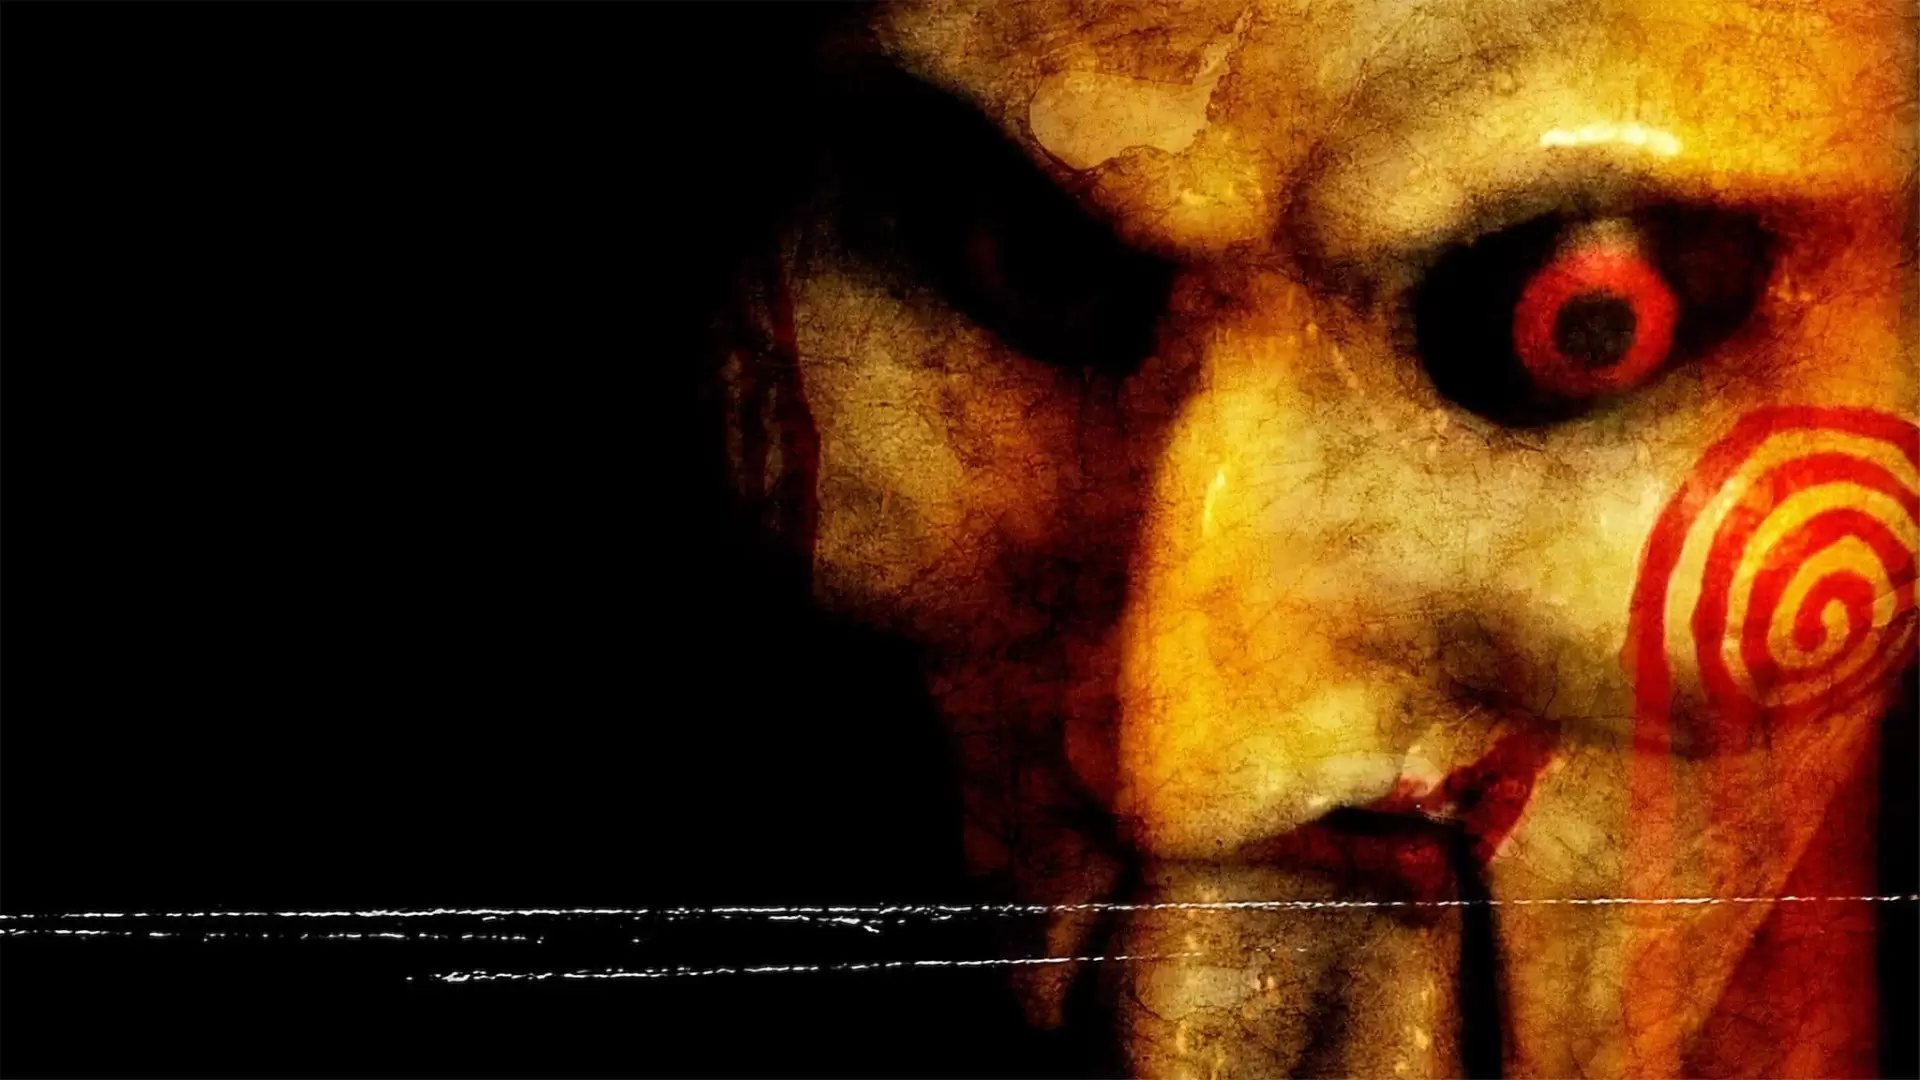 دانلود فیلم Saw II 2005 (اره ۲) با زیرنویس فارسی و تماشای آنلاین